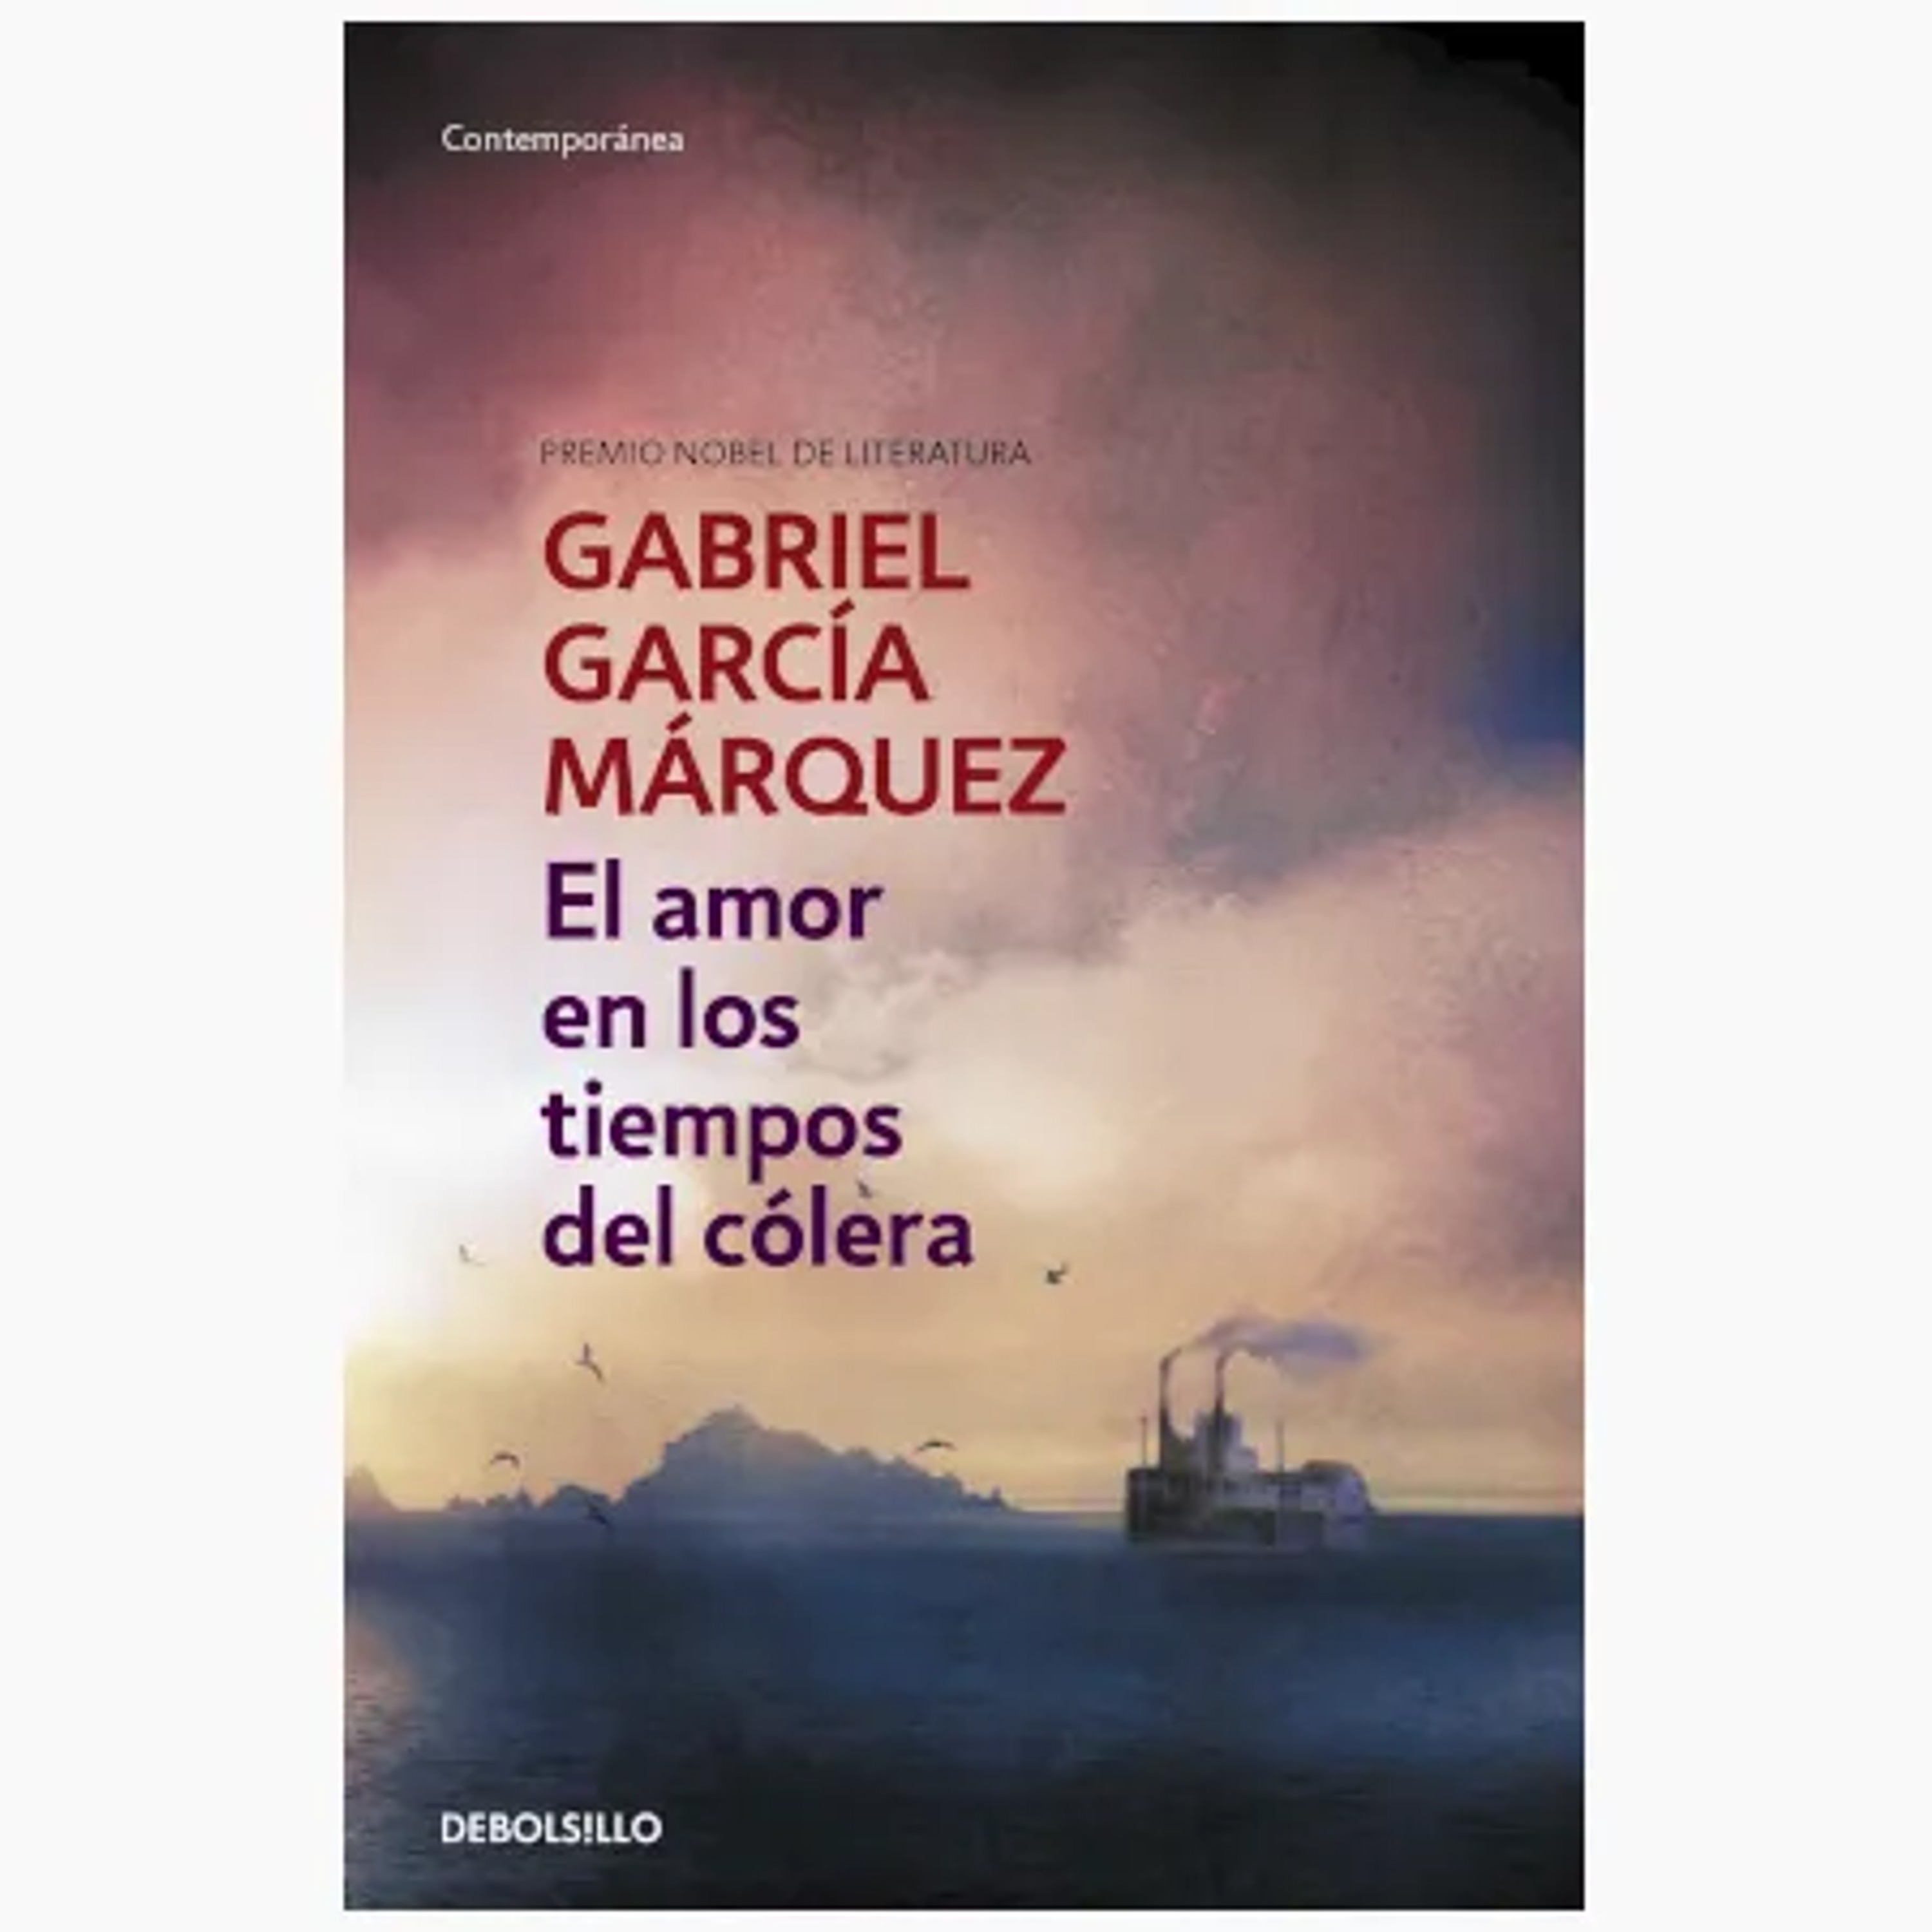 Resumen del libro El amor en los tiempos del cólera de Gabriel García Márquez